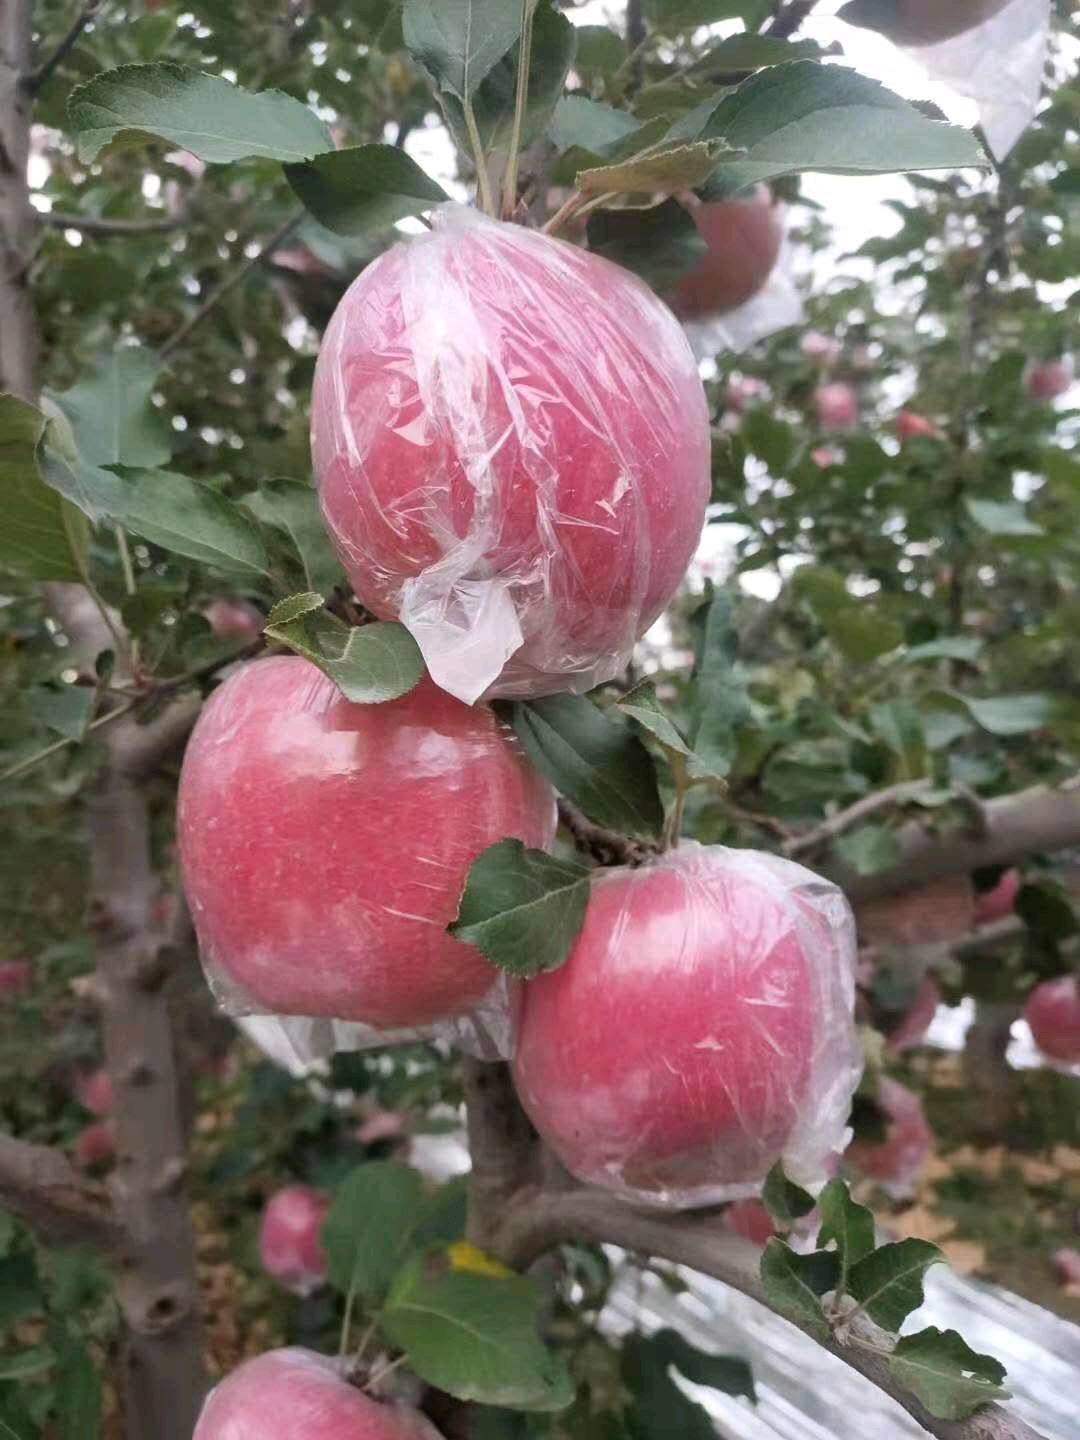 山西运城冰糖心红富士苹果，75MM以上产地直供，支持一件代发，